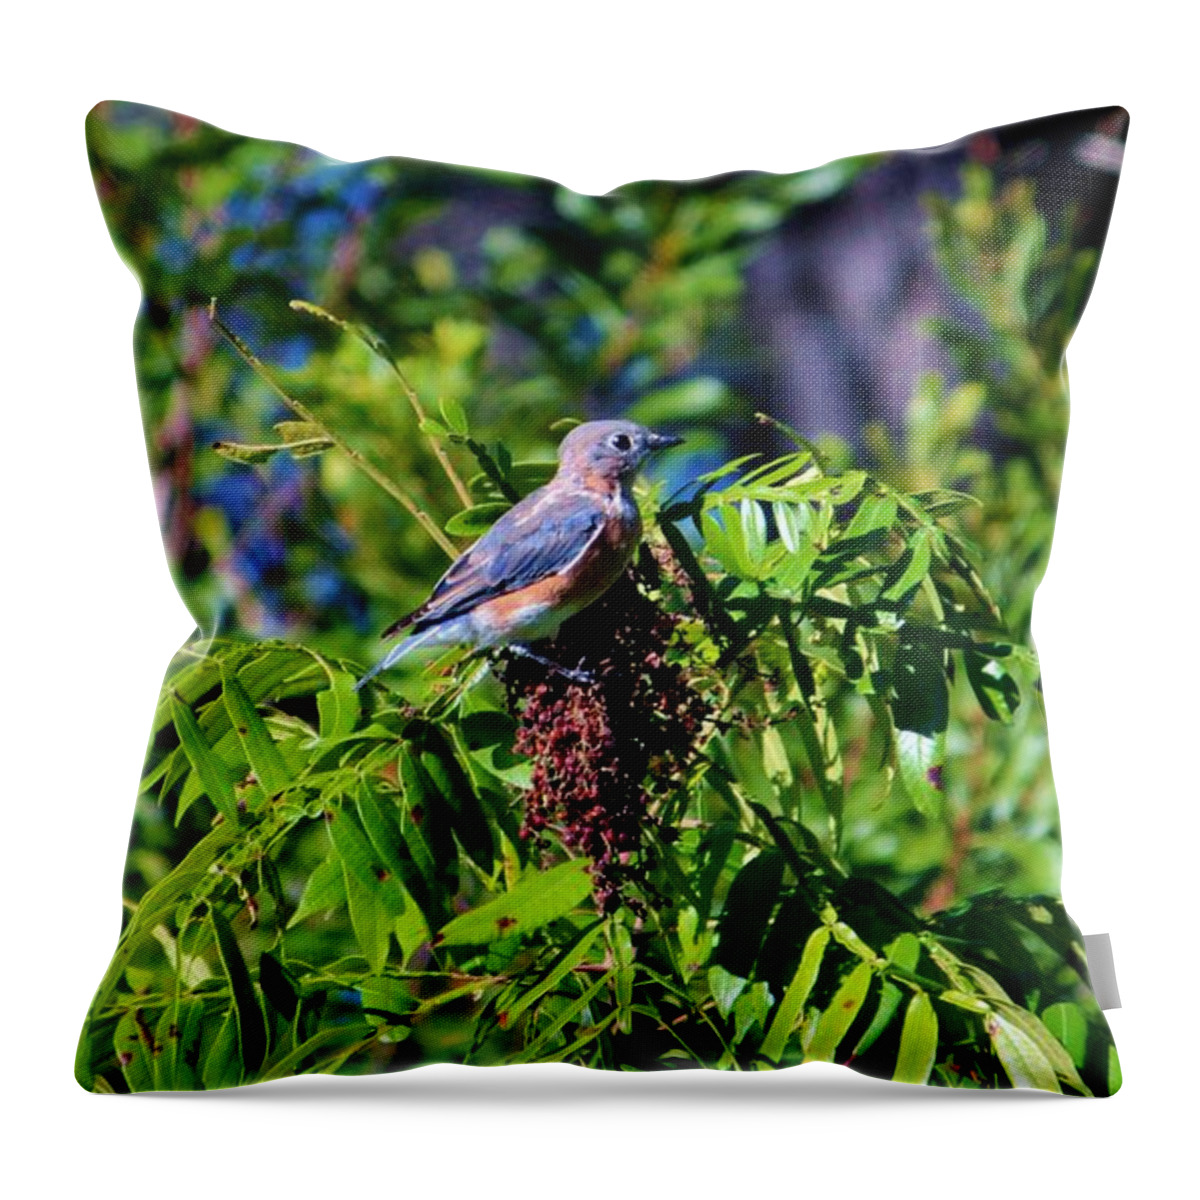 Bluebird Throw Pillow featuring the photograph Beautiful Bluebird by Cynthia Guinn